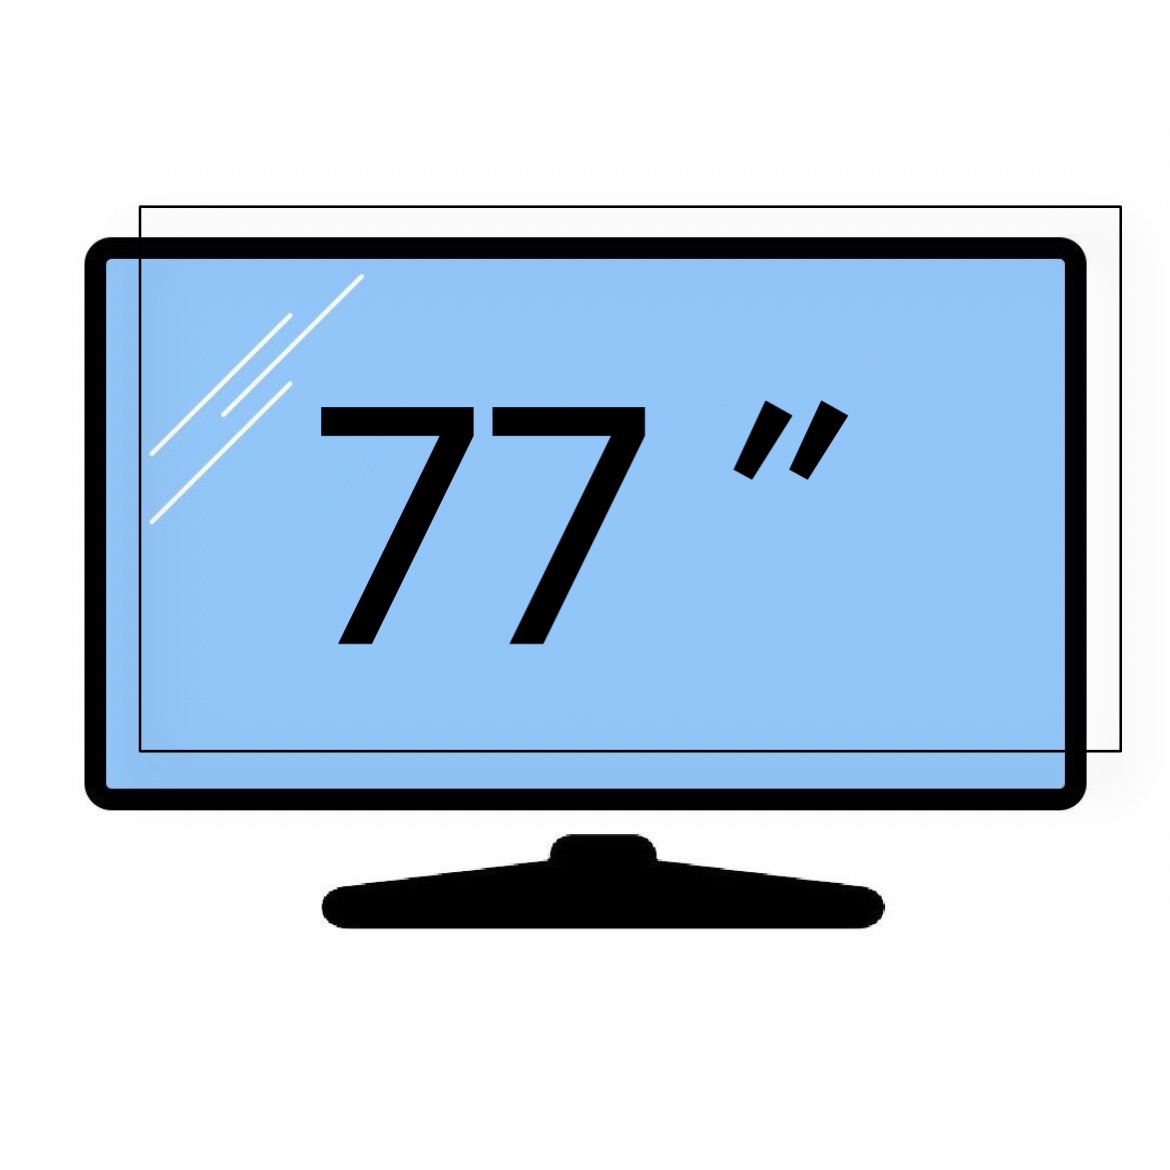 محافظ صفحه تلویزیون 77 اینچ